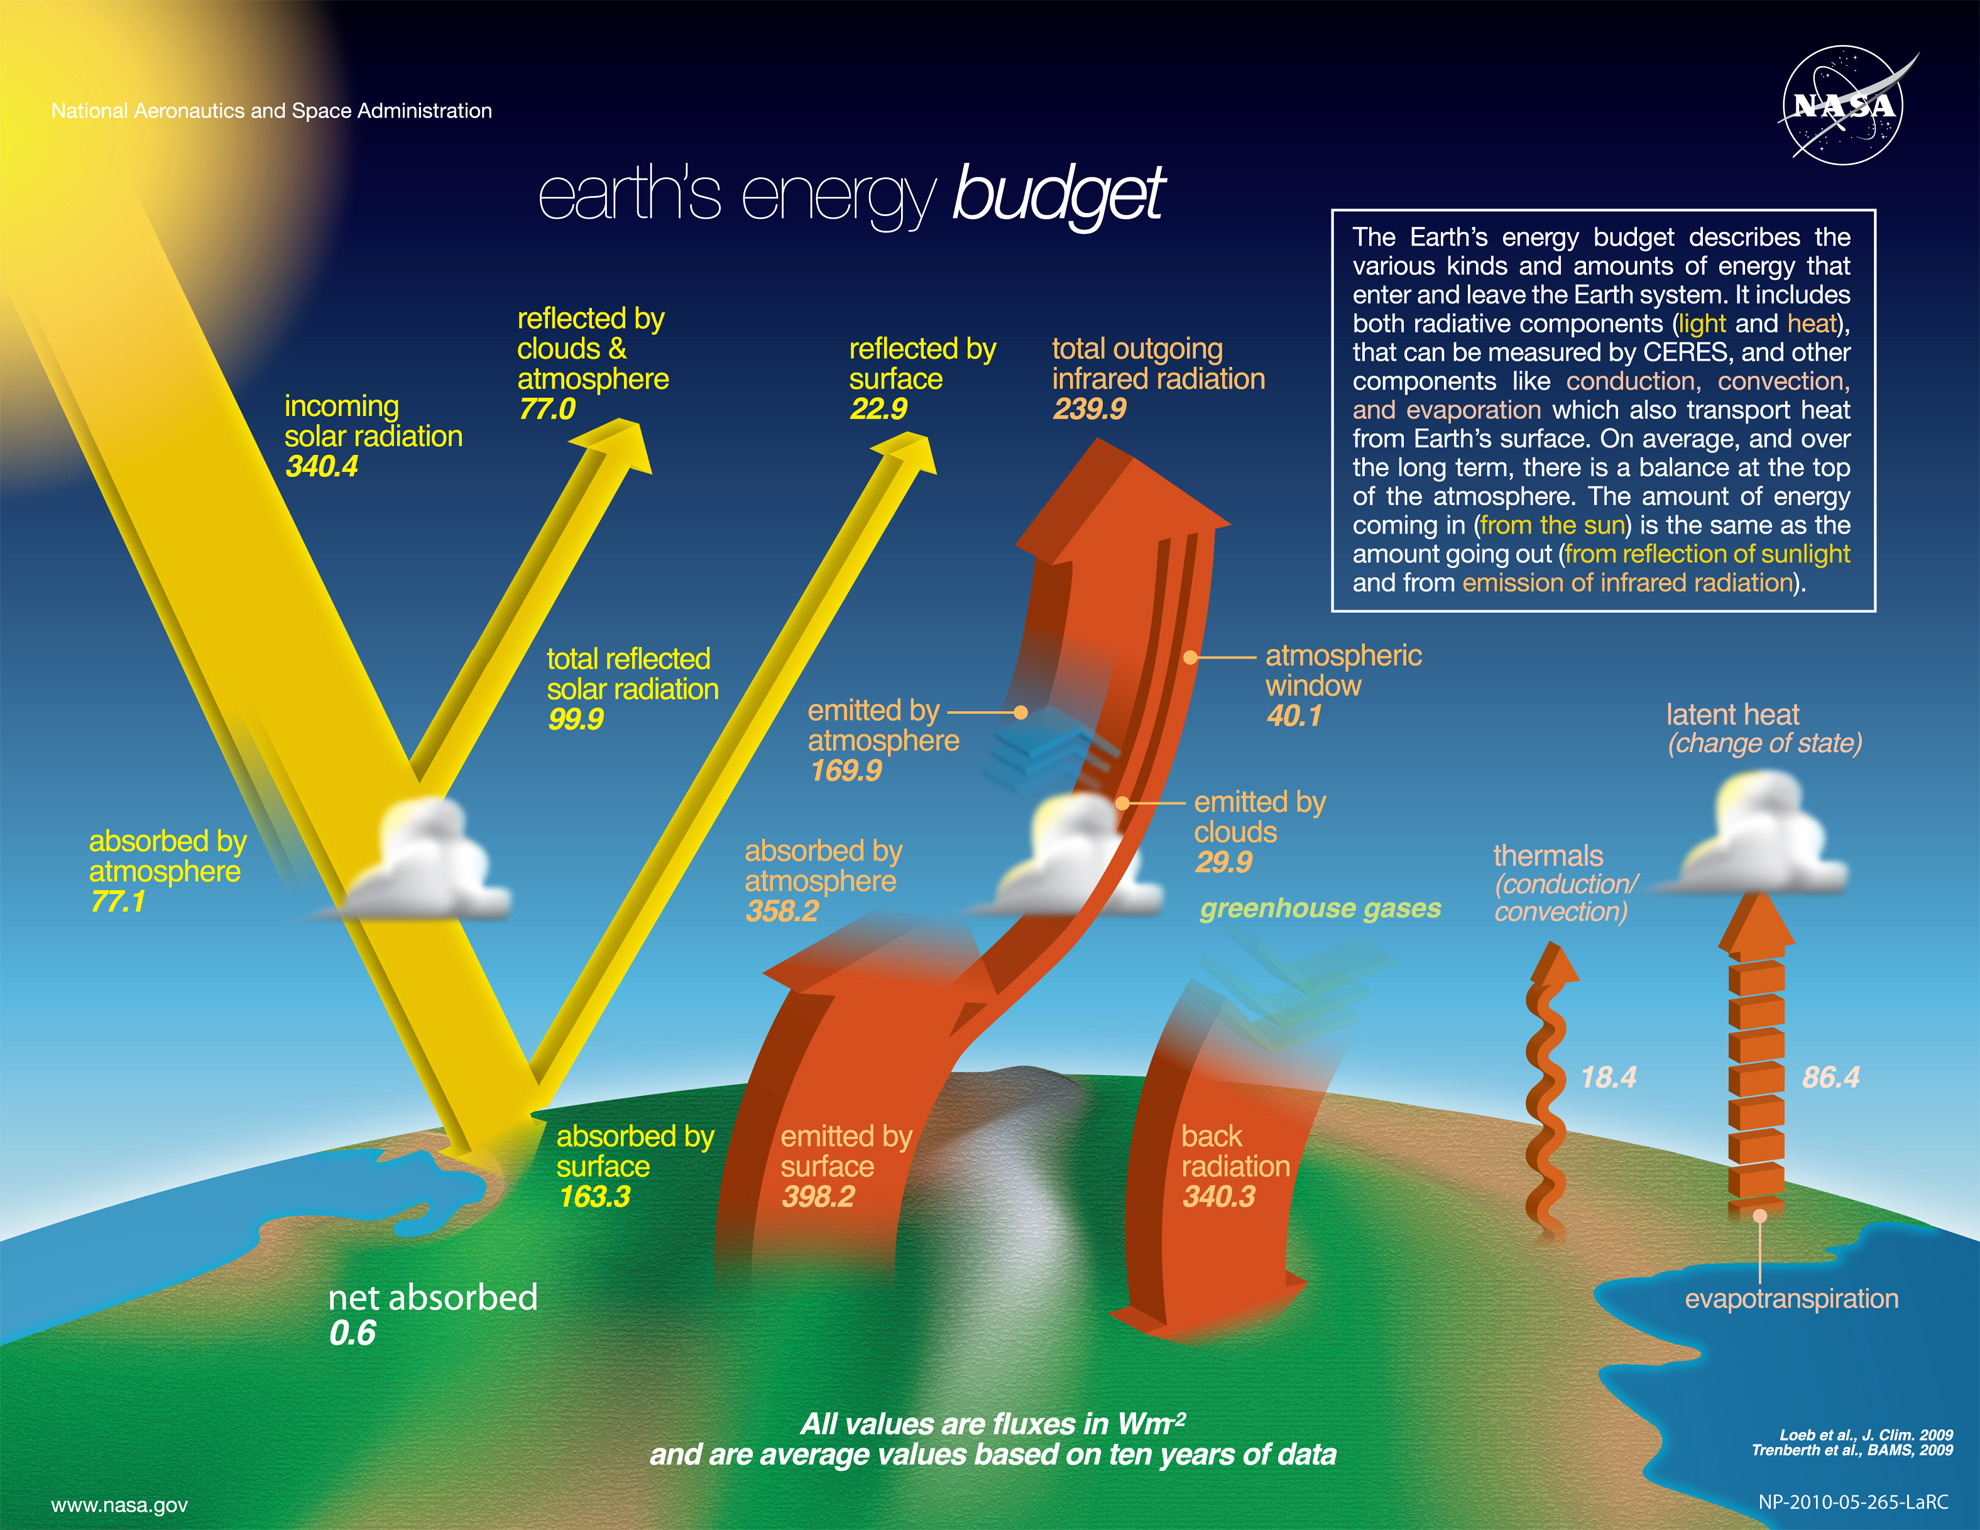 2021-05-15-The-NASA-Earth's-Energy-Budget-Poster-Radiant-Energy-System-satellite-infrared-radi...jpg